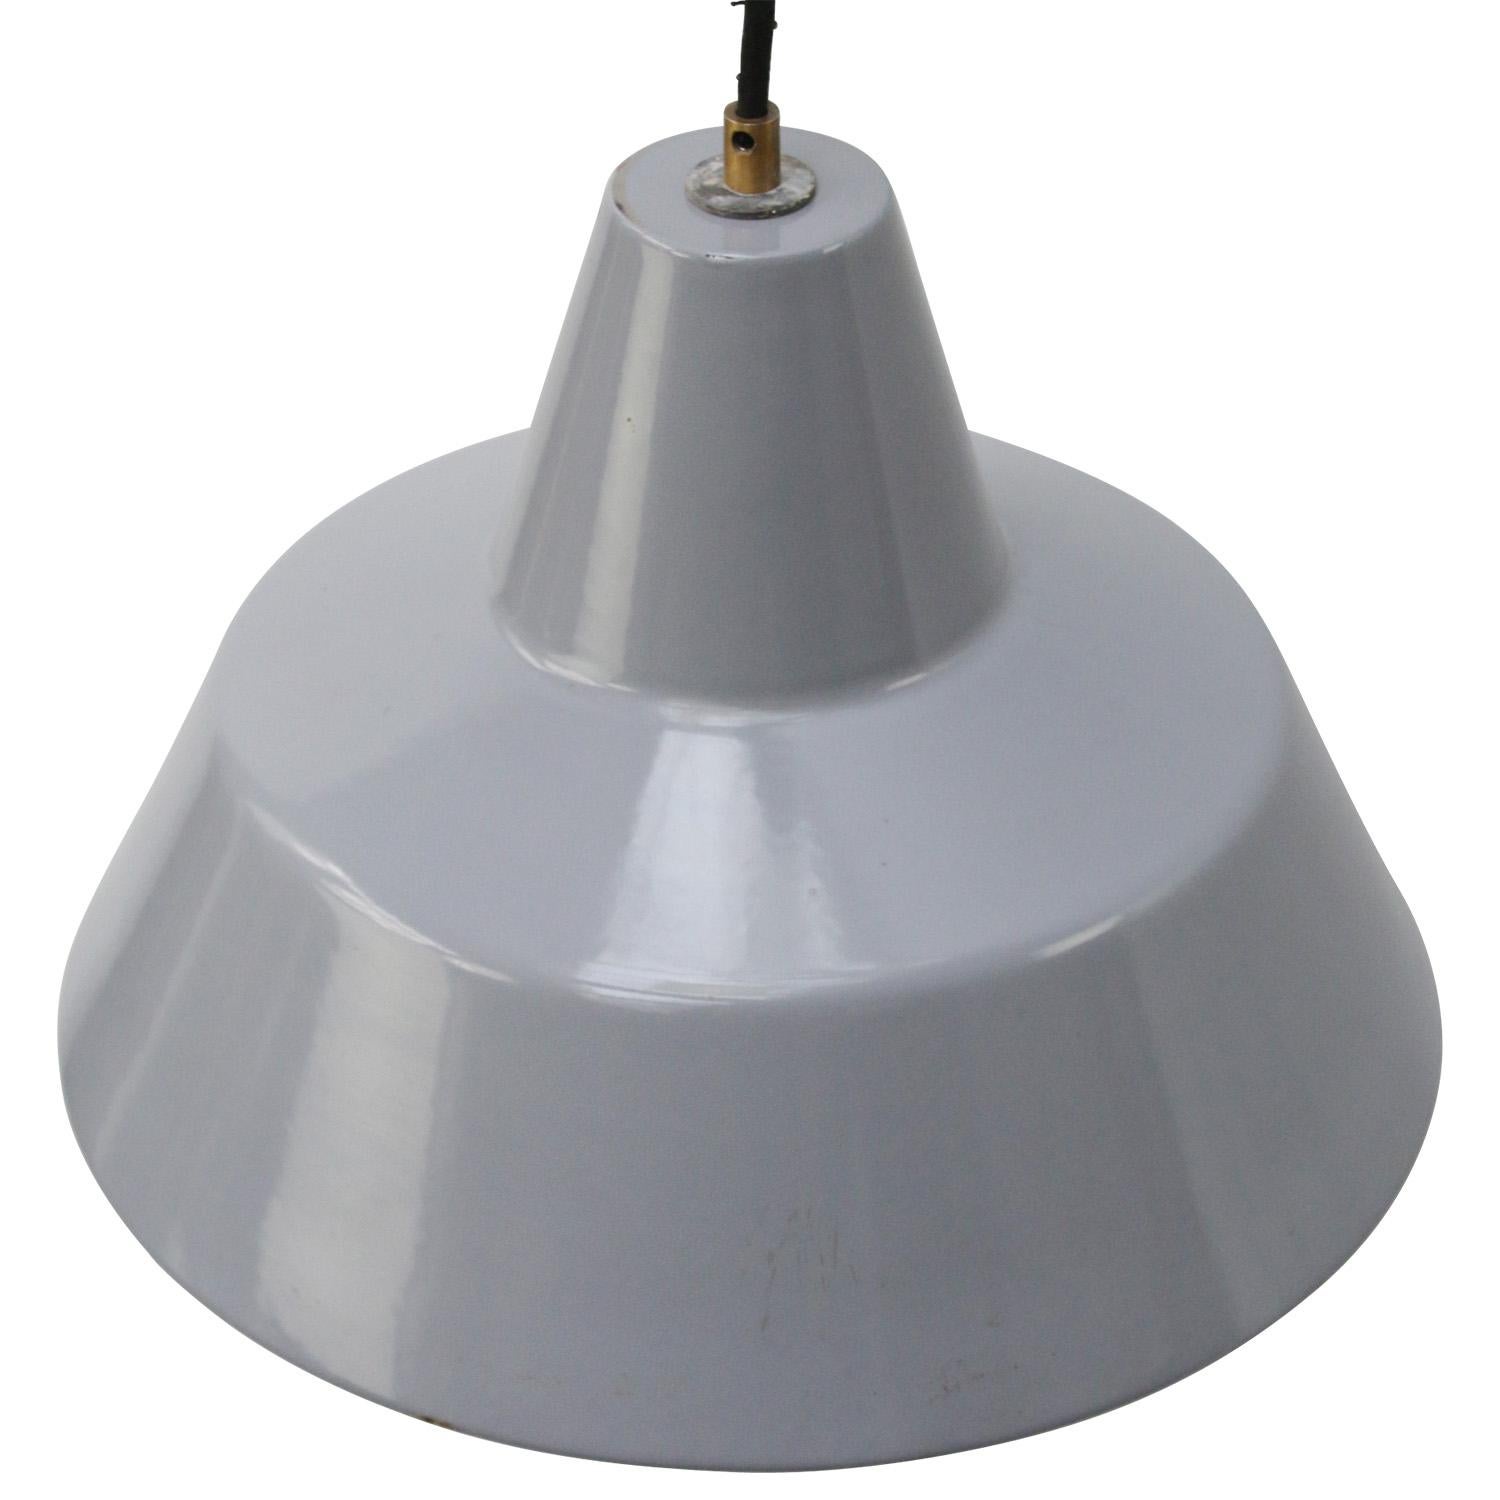 Lampe à suspension industrielle néerlandaise par Philips
Intérieur blanc émaillé gris

Poids : 2,00 kg / 4,4 lb

Le prix est fixé par article individuel. Toutes les lampes ont été rendues conformes aux normes internationales pour les ampoules à